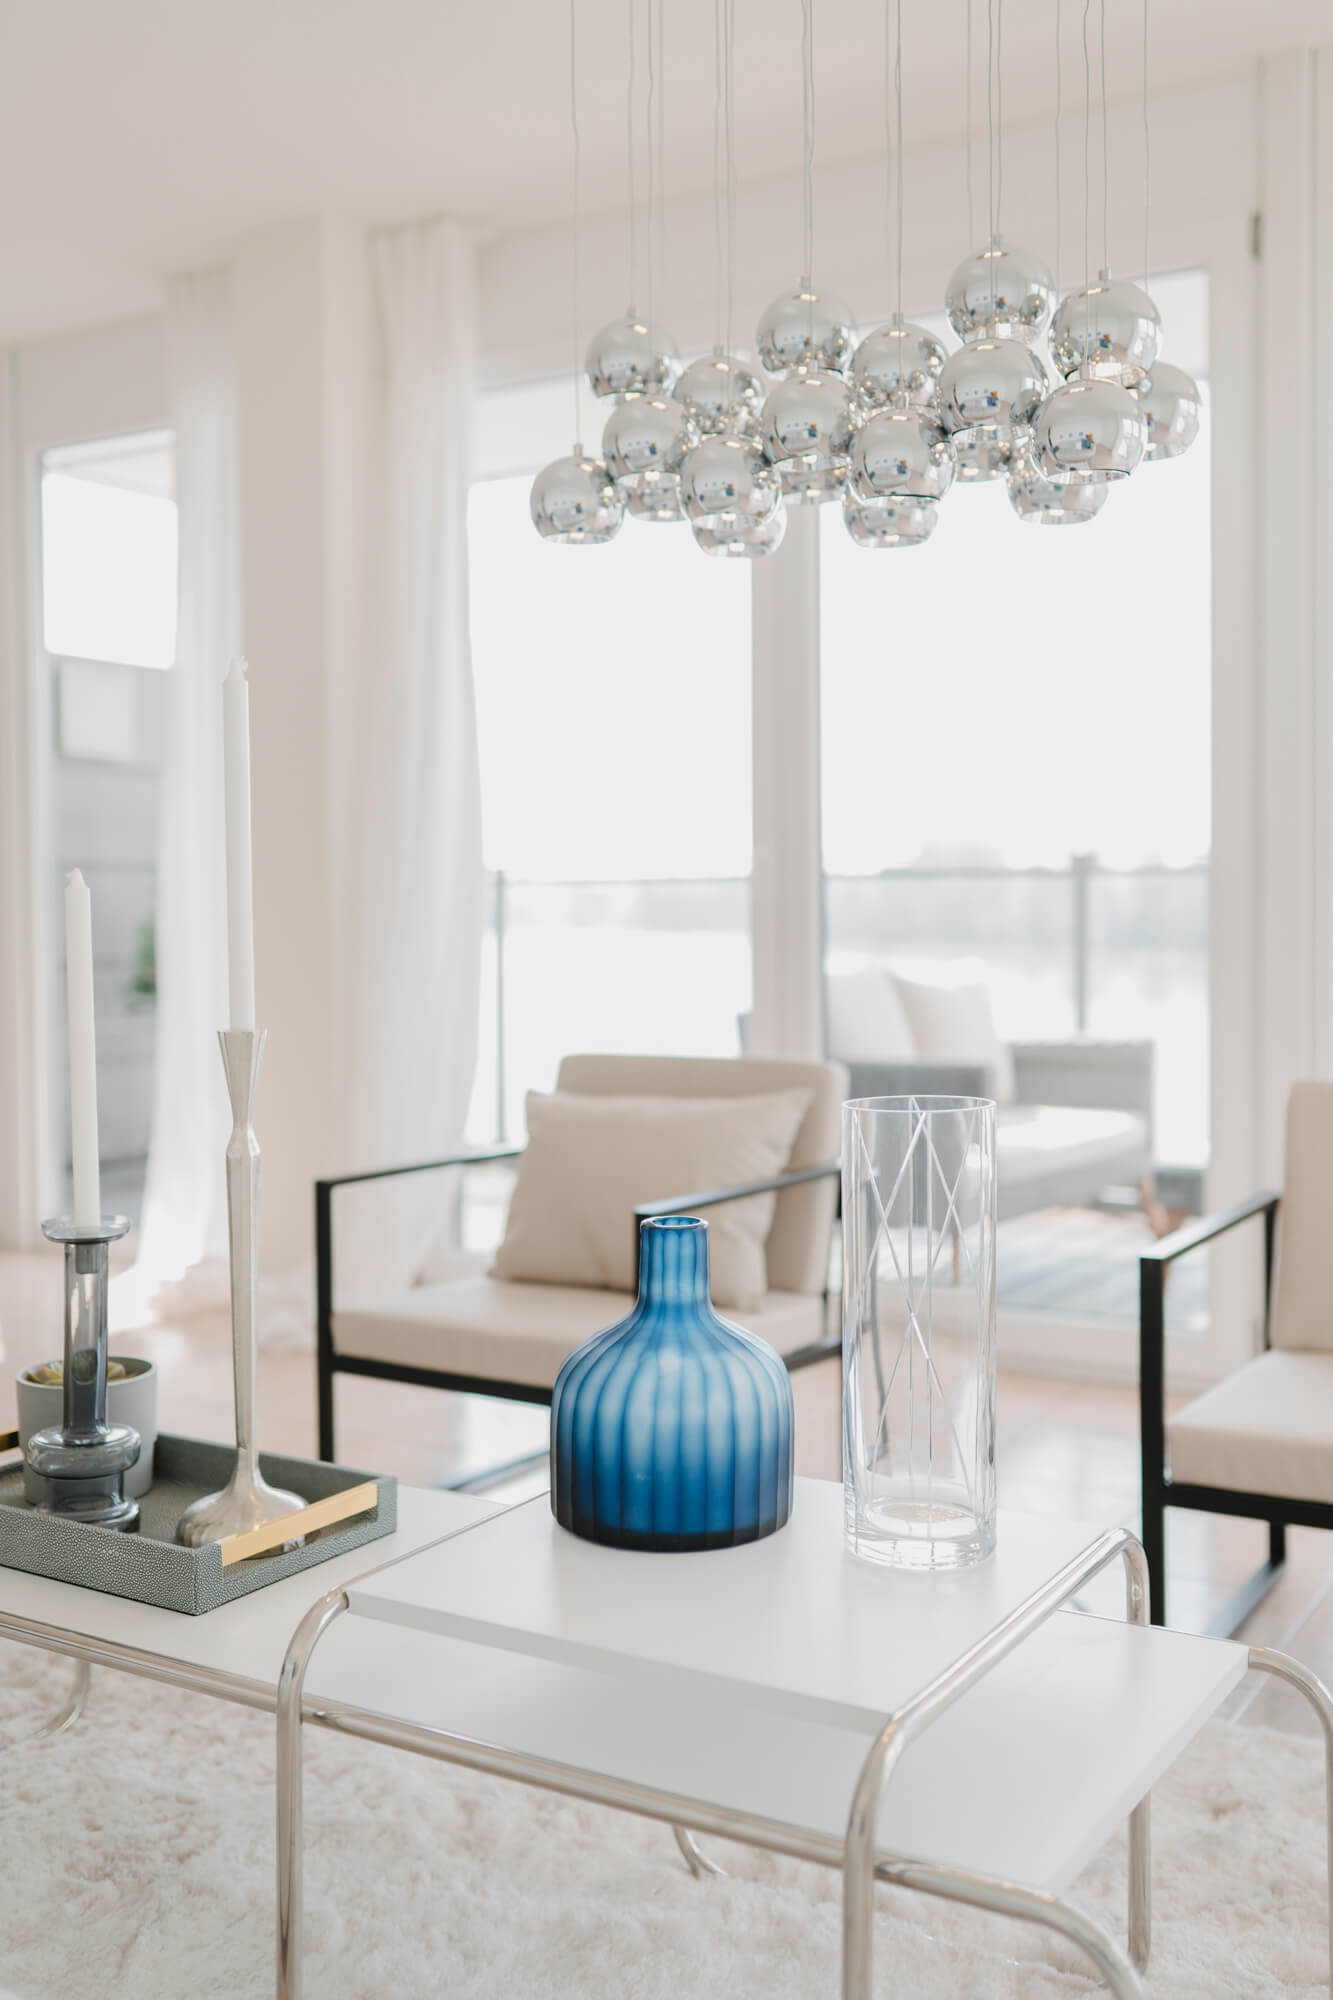 Lisa Treusch Businessfotografin Mainz Immobilienfotografie Home-Staging weißer Sessel in einem weissen Raum mit weissen Kerzen und weißen Vorhängen